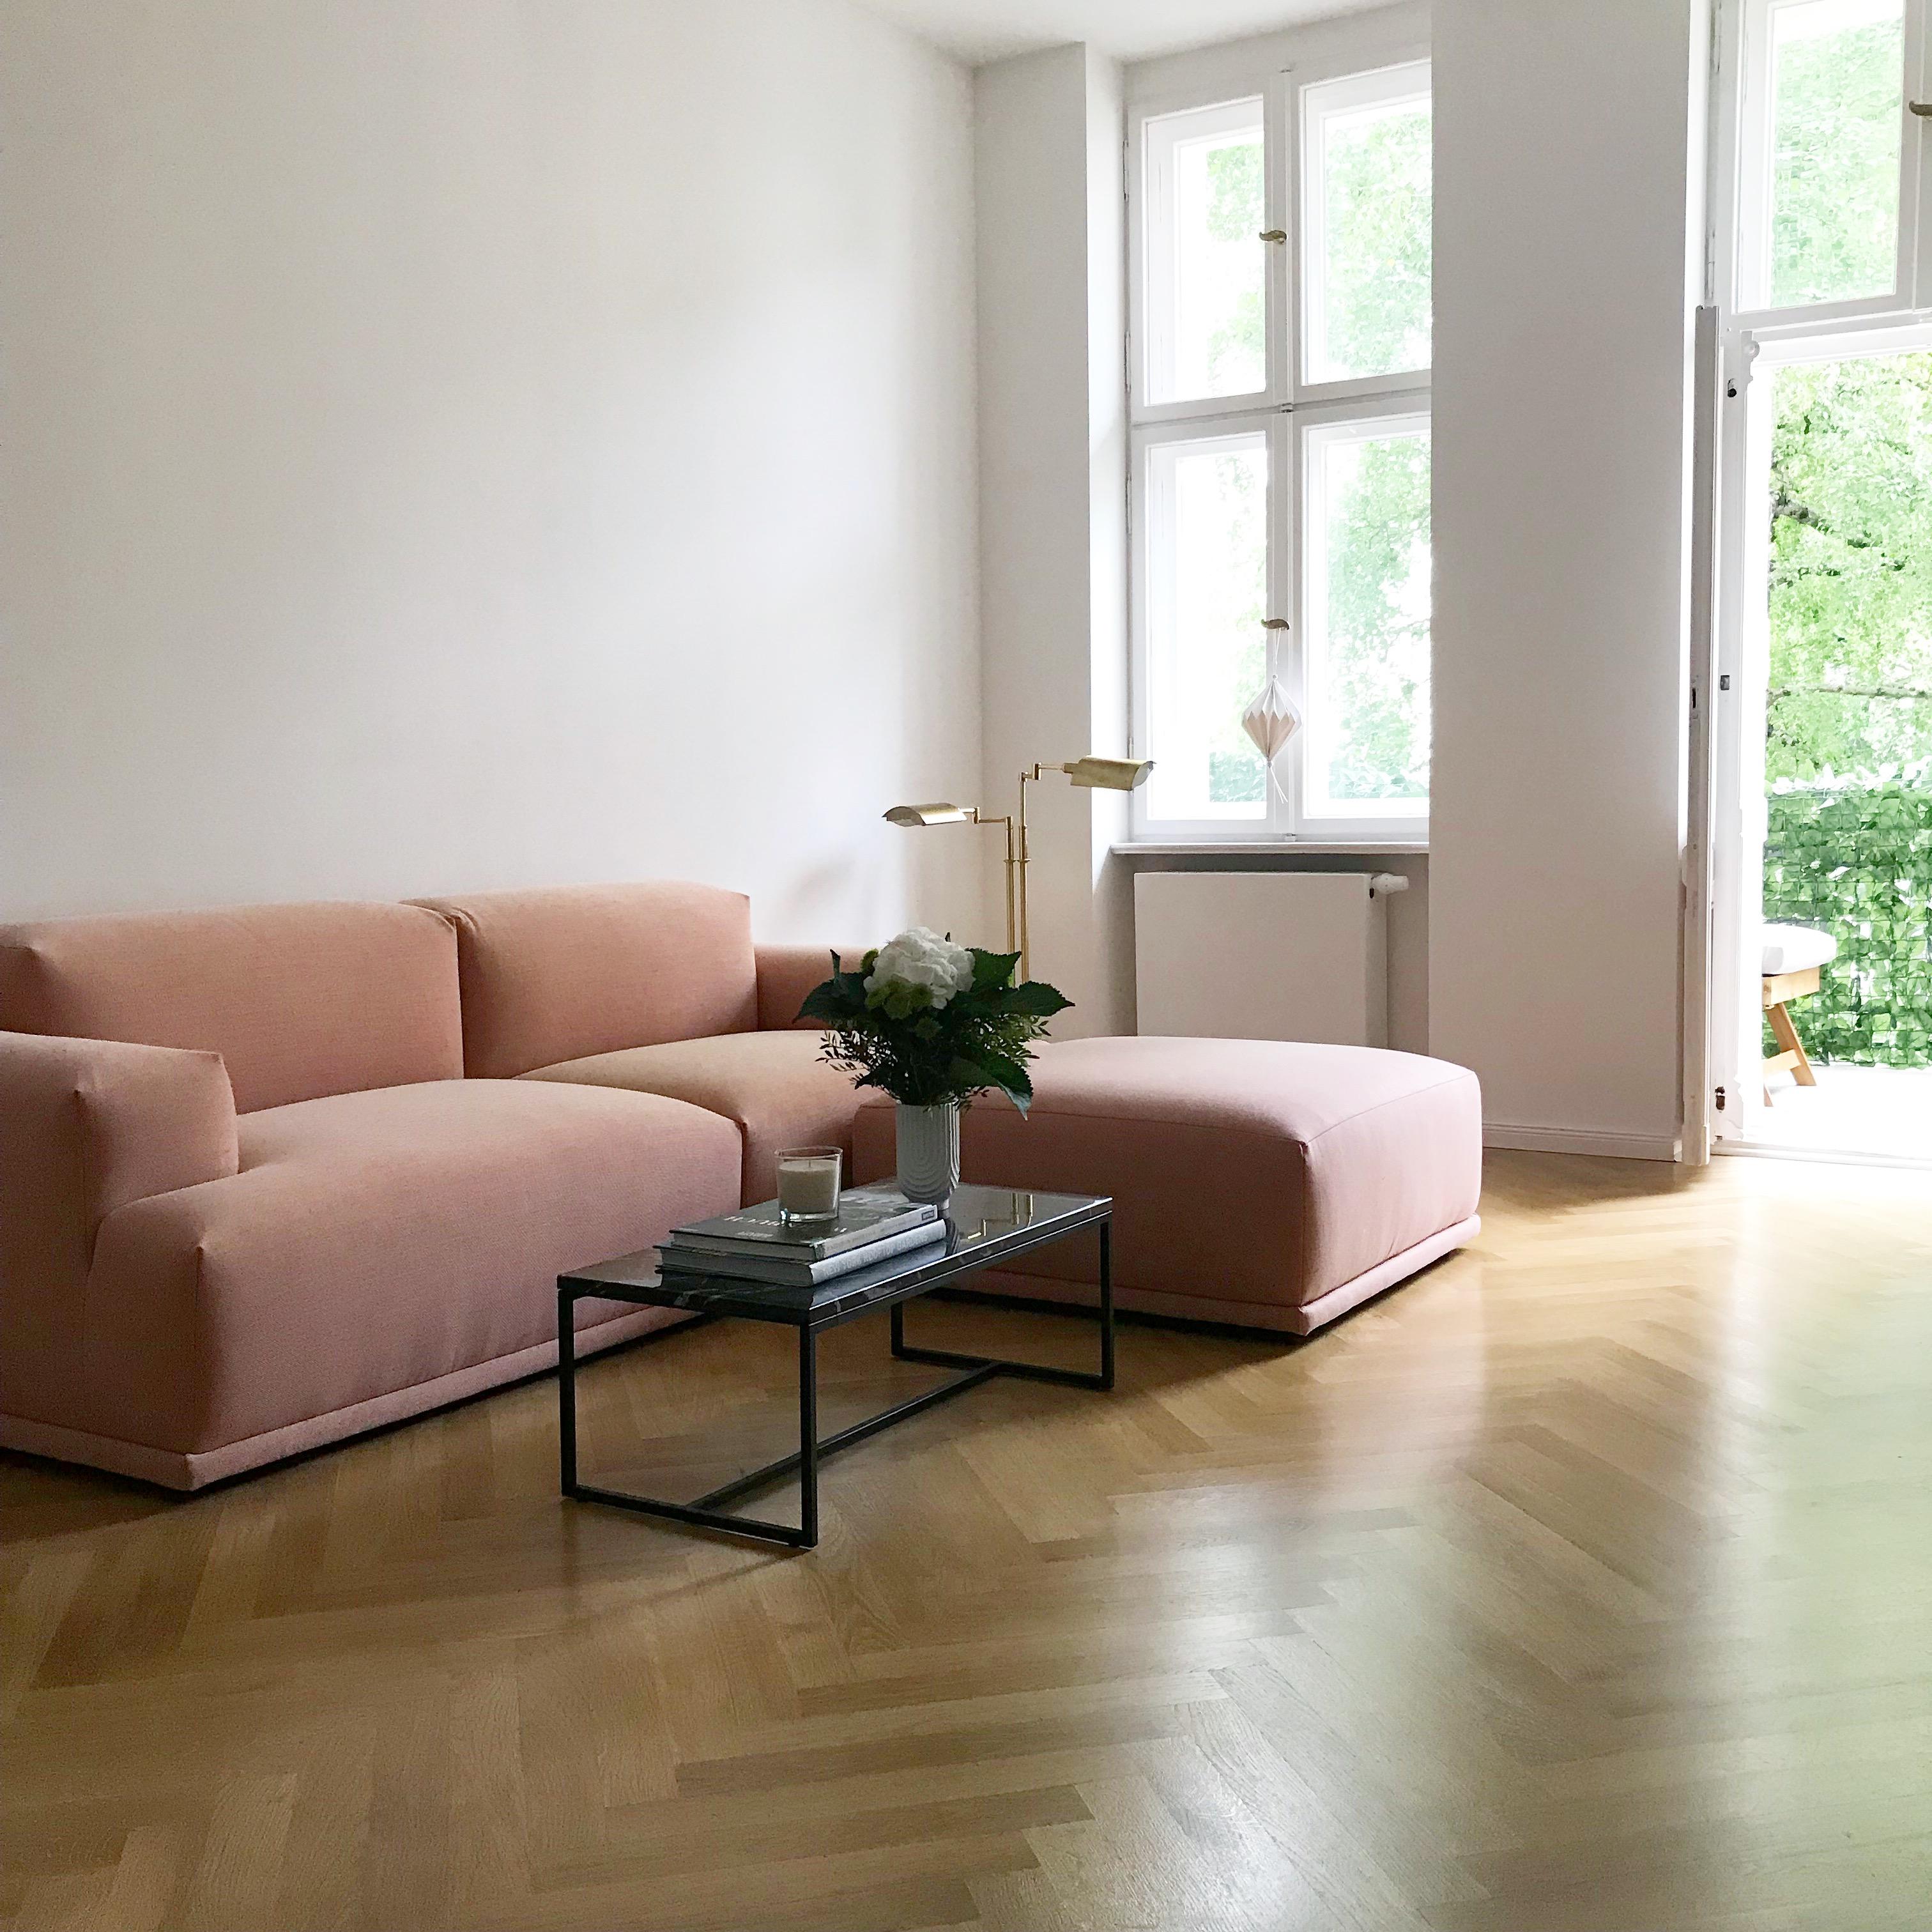 Da ist sie endlich. Die allerschönste Couch der Welt! Dominique 
#muuto #rosa #wohnzimmer